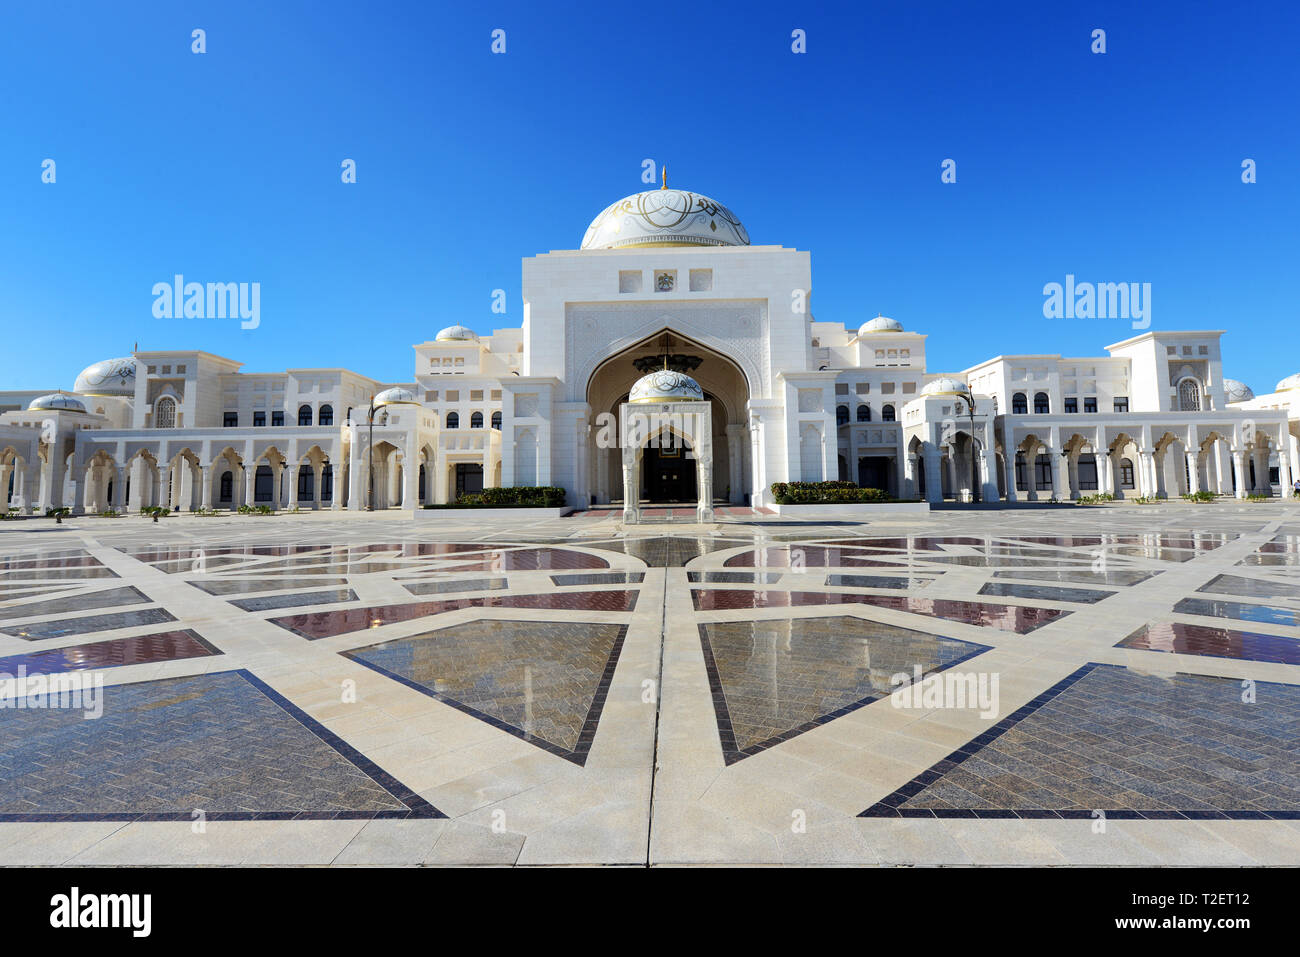 La hermosa Qasr Al Watan - Palacio Presidencial en Abu Dhabi, Emiratos Árabes Unidos. Foto de stock